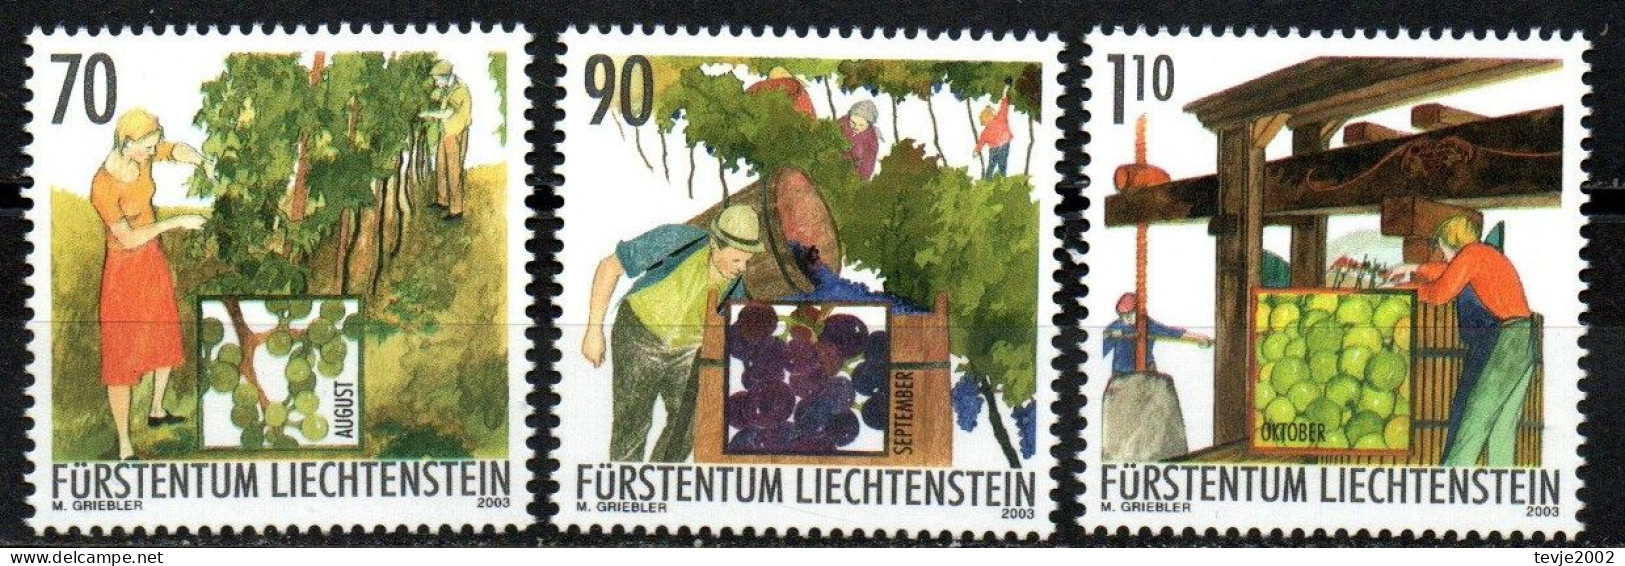 Liechtenstein 2003 - Mi.Nr. 1322 - 1324 - Postfrisch MNH - Weinbau Winzer Wine Growing Winemaker - Landwirtschaft